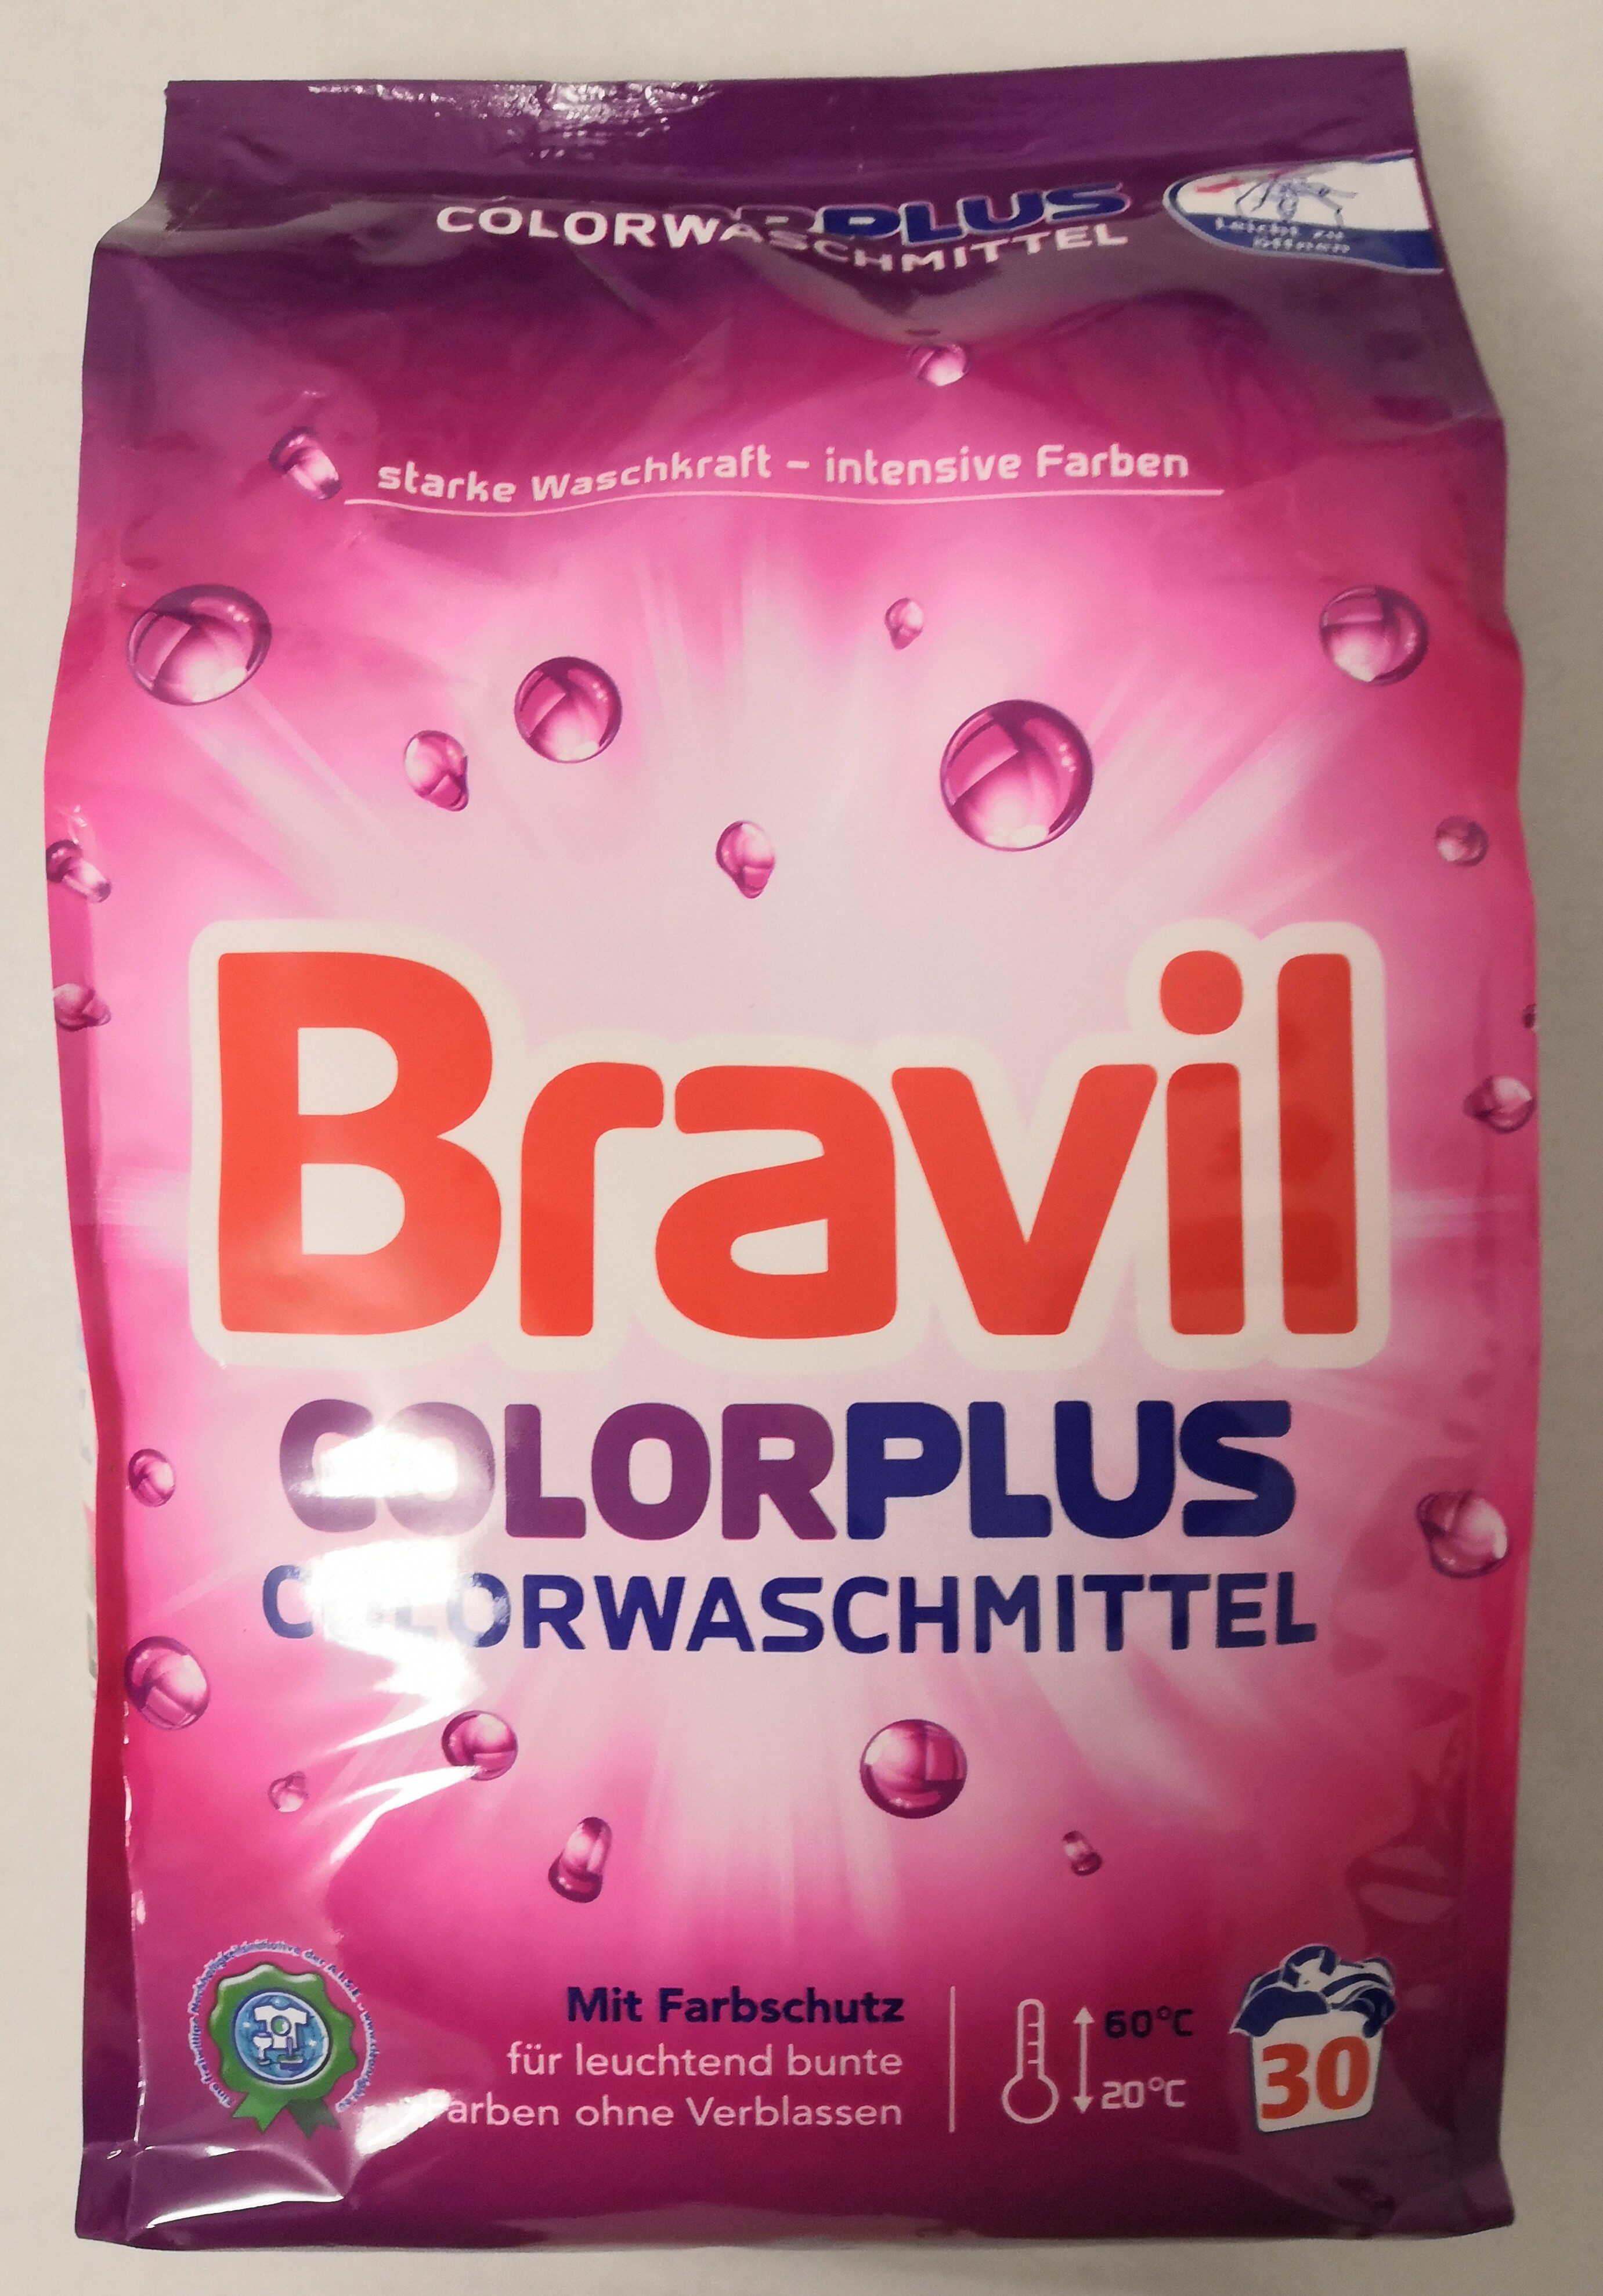 Bravil ColorPlus - Product - de